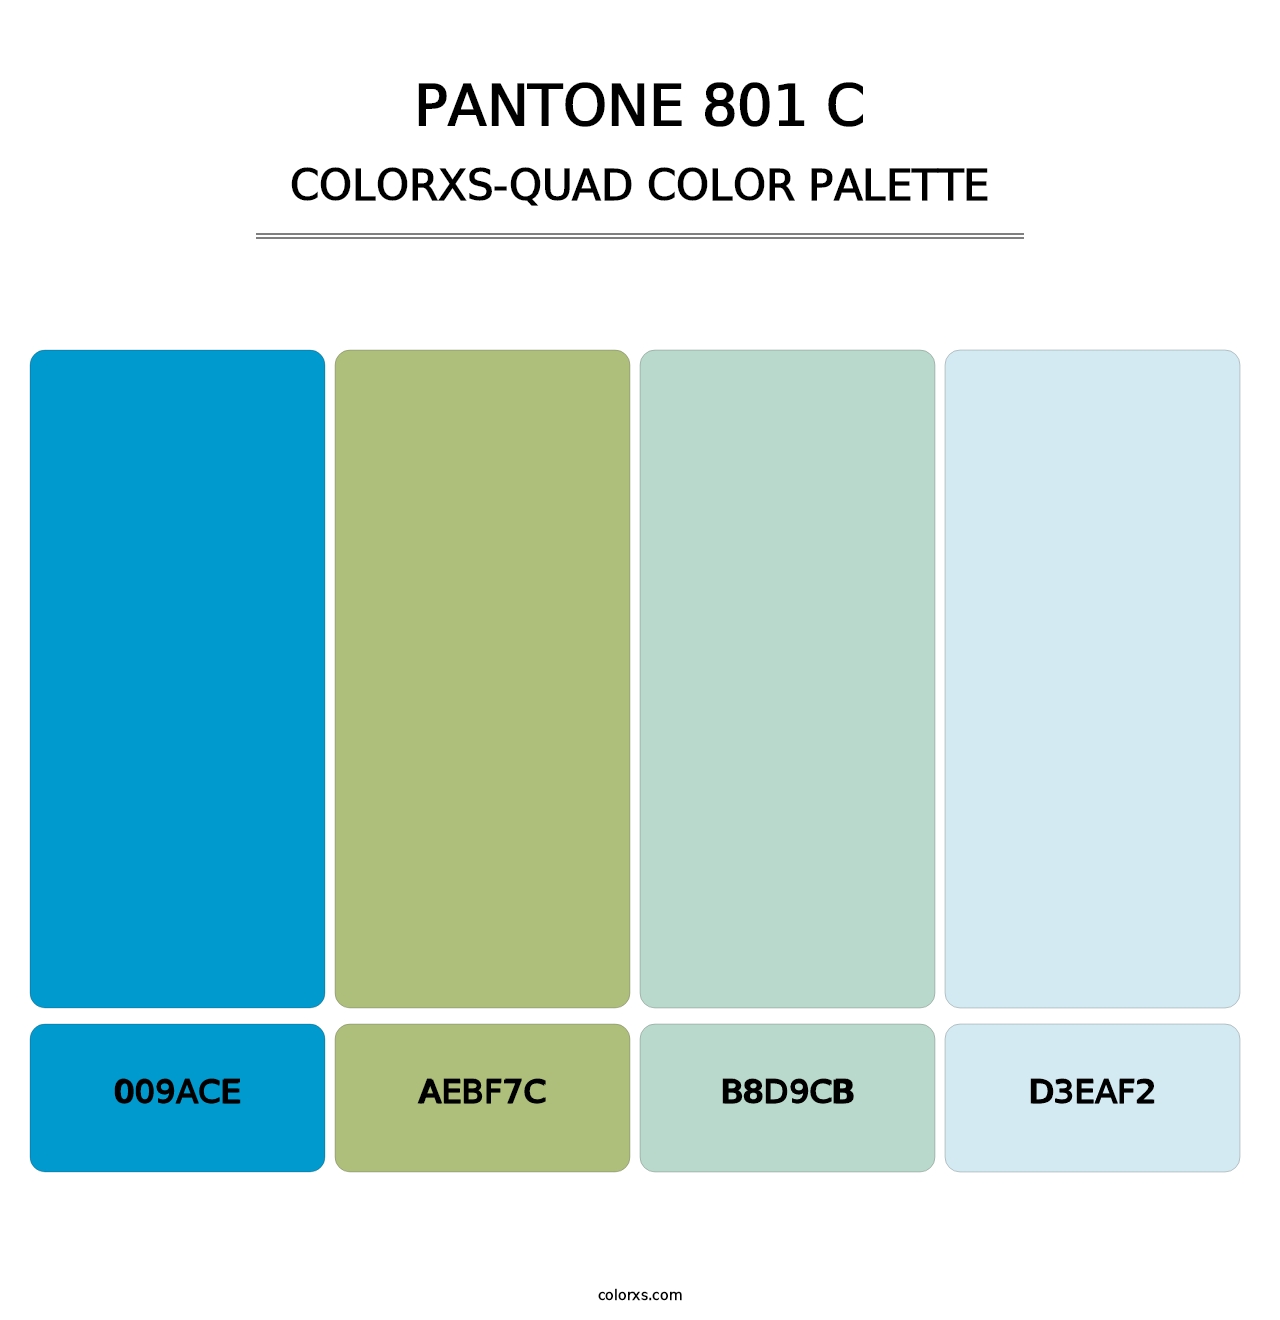 PANTONE 801 C - Colorxs Quad Palette